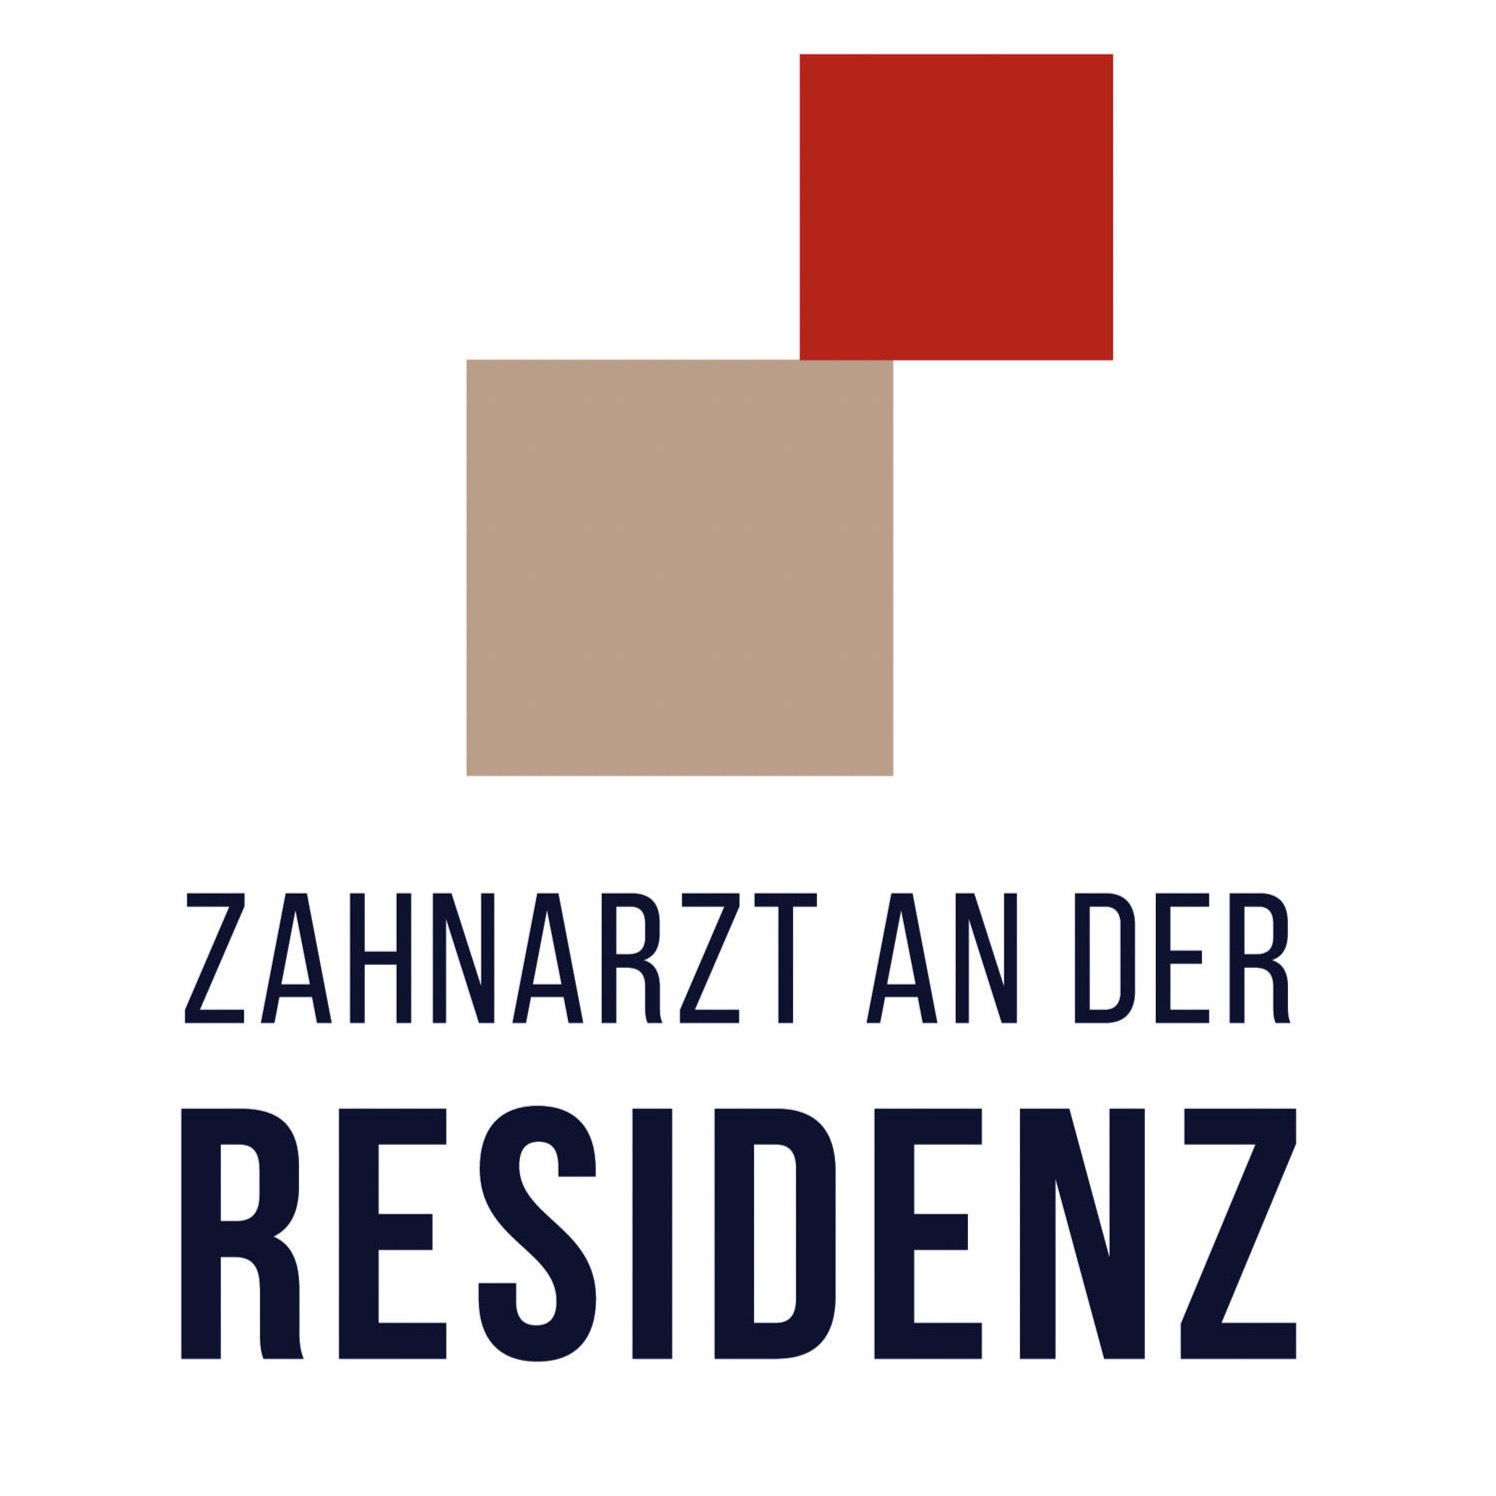 Zahnarzt Ansbach | Zahnarzt an der Residenz | Dr. David Müller | Logo